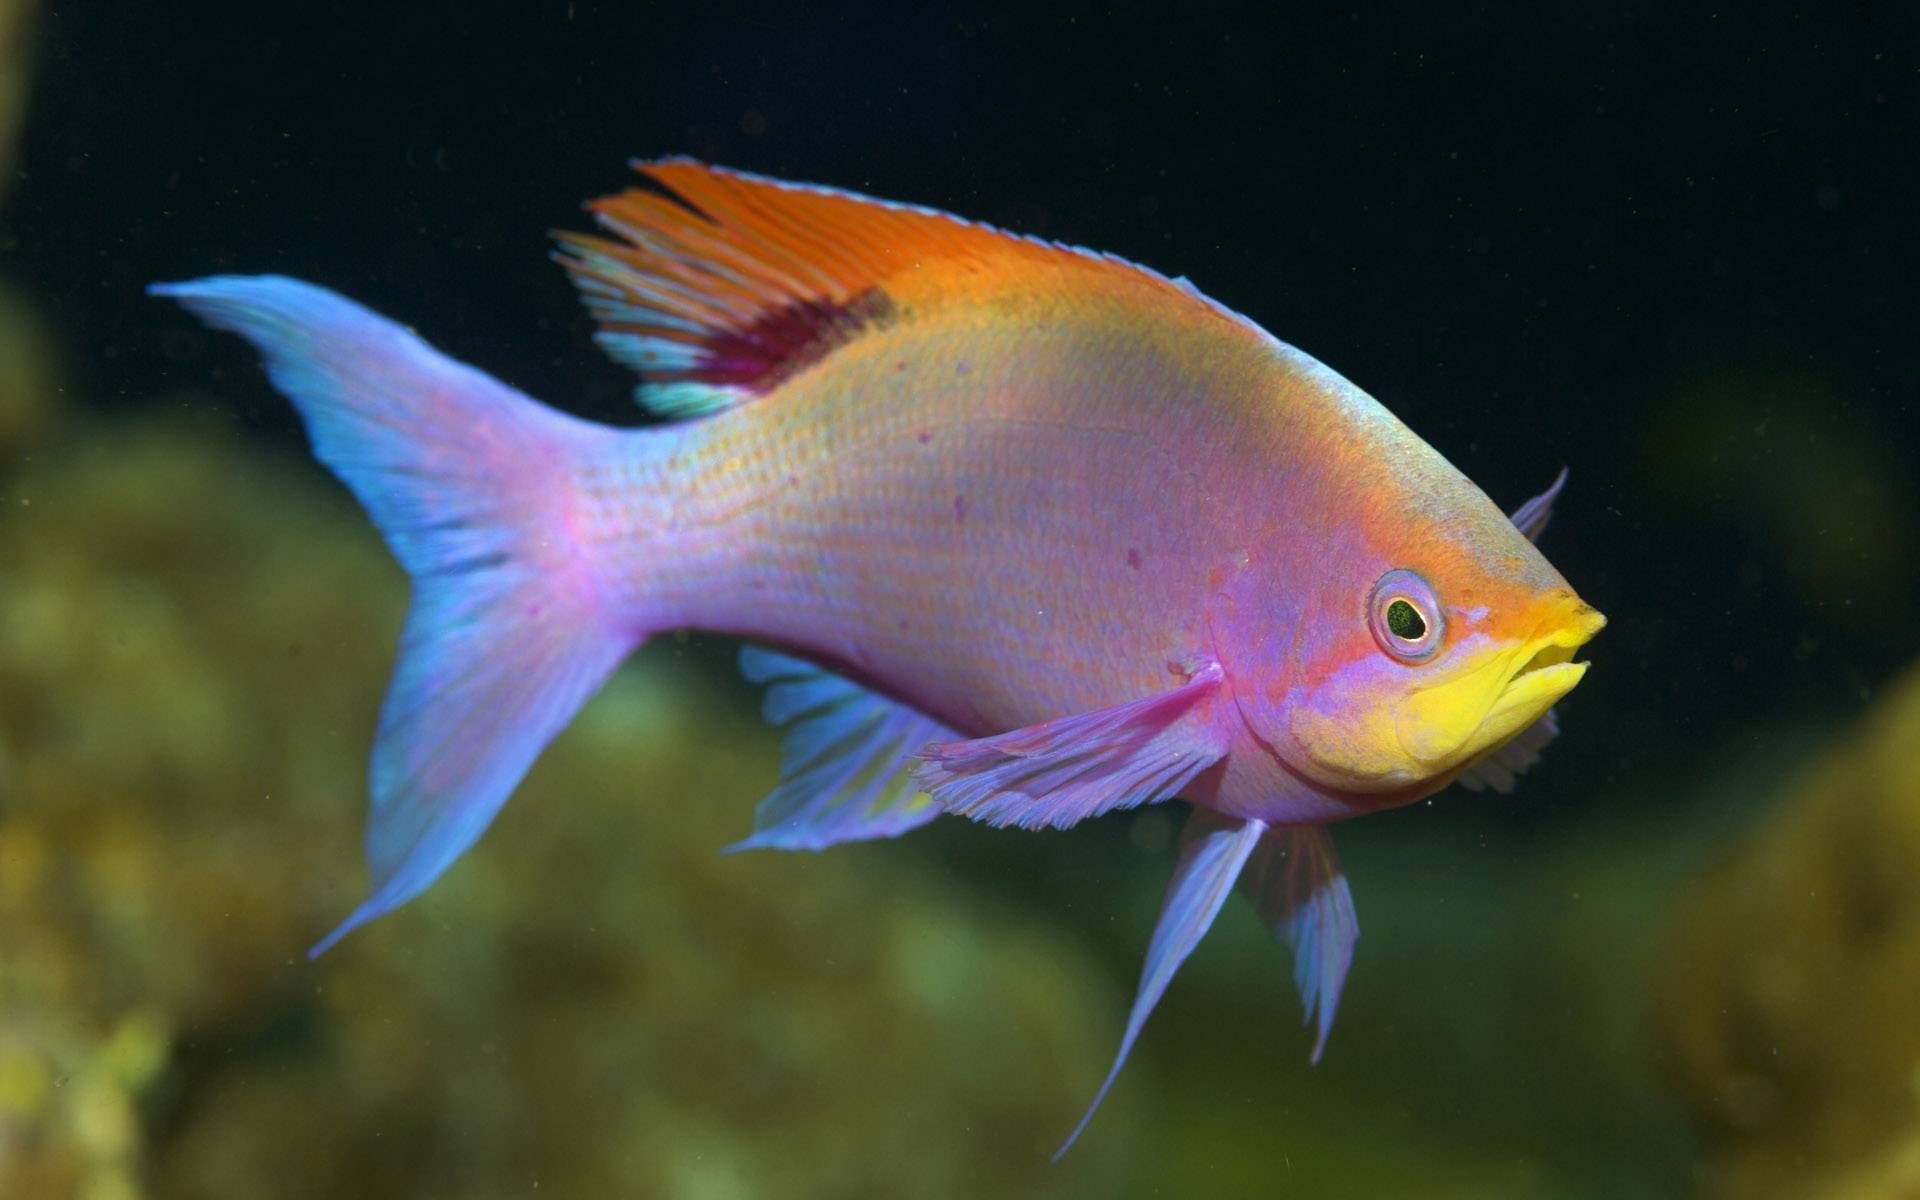 Colorful Fish - Wallpaper - Tropical Fish/Underwater Sea Life ...